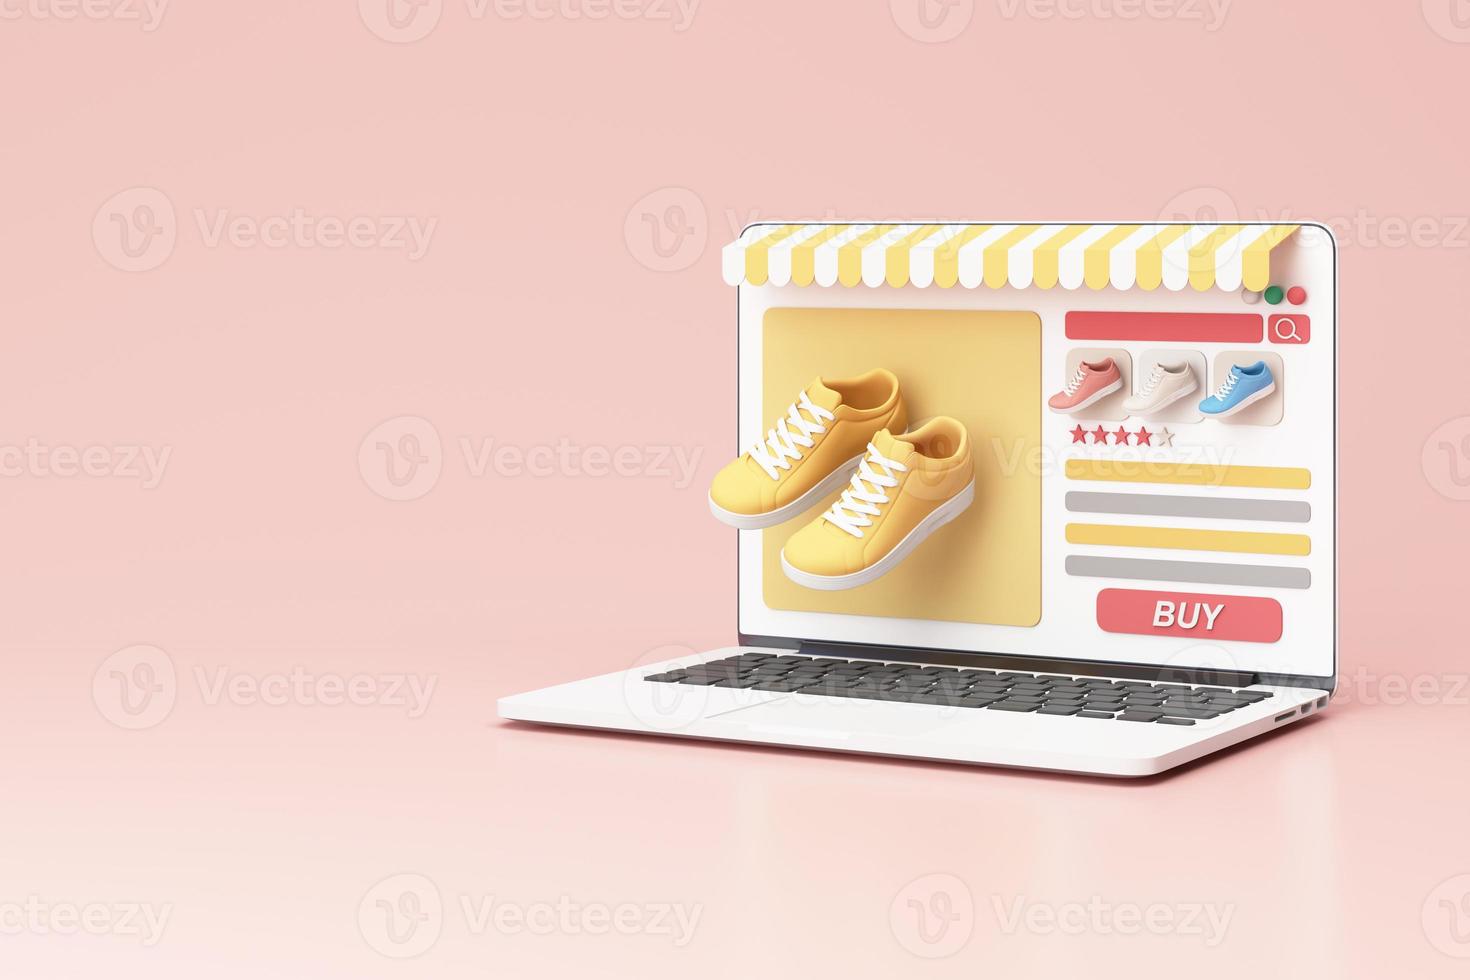 onlinebutikskoncept på bärbar datorskärm med randig markis och sko sneaker pastellfärg på skärmen med köpikon och kommentar recension. på rosa bakgrund realistisk 3d-rendering foto